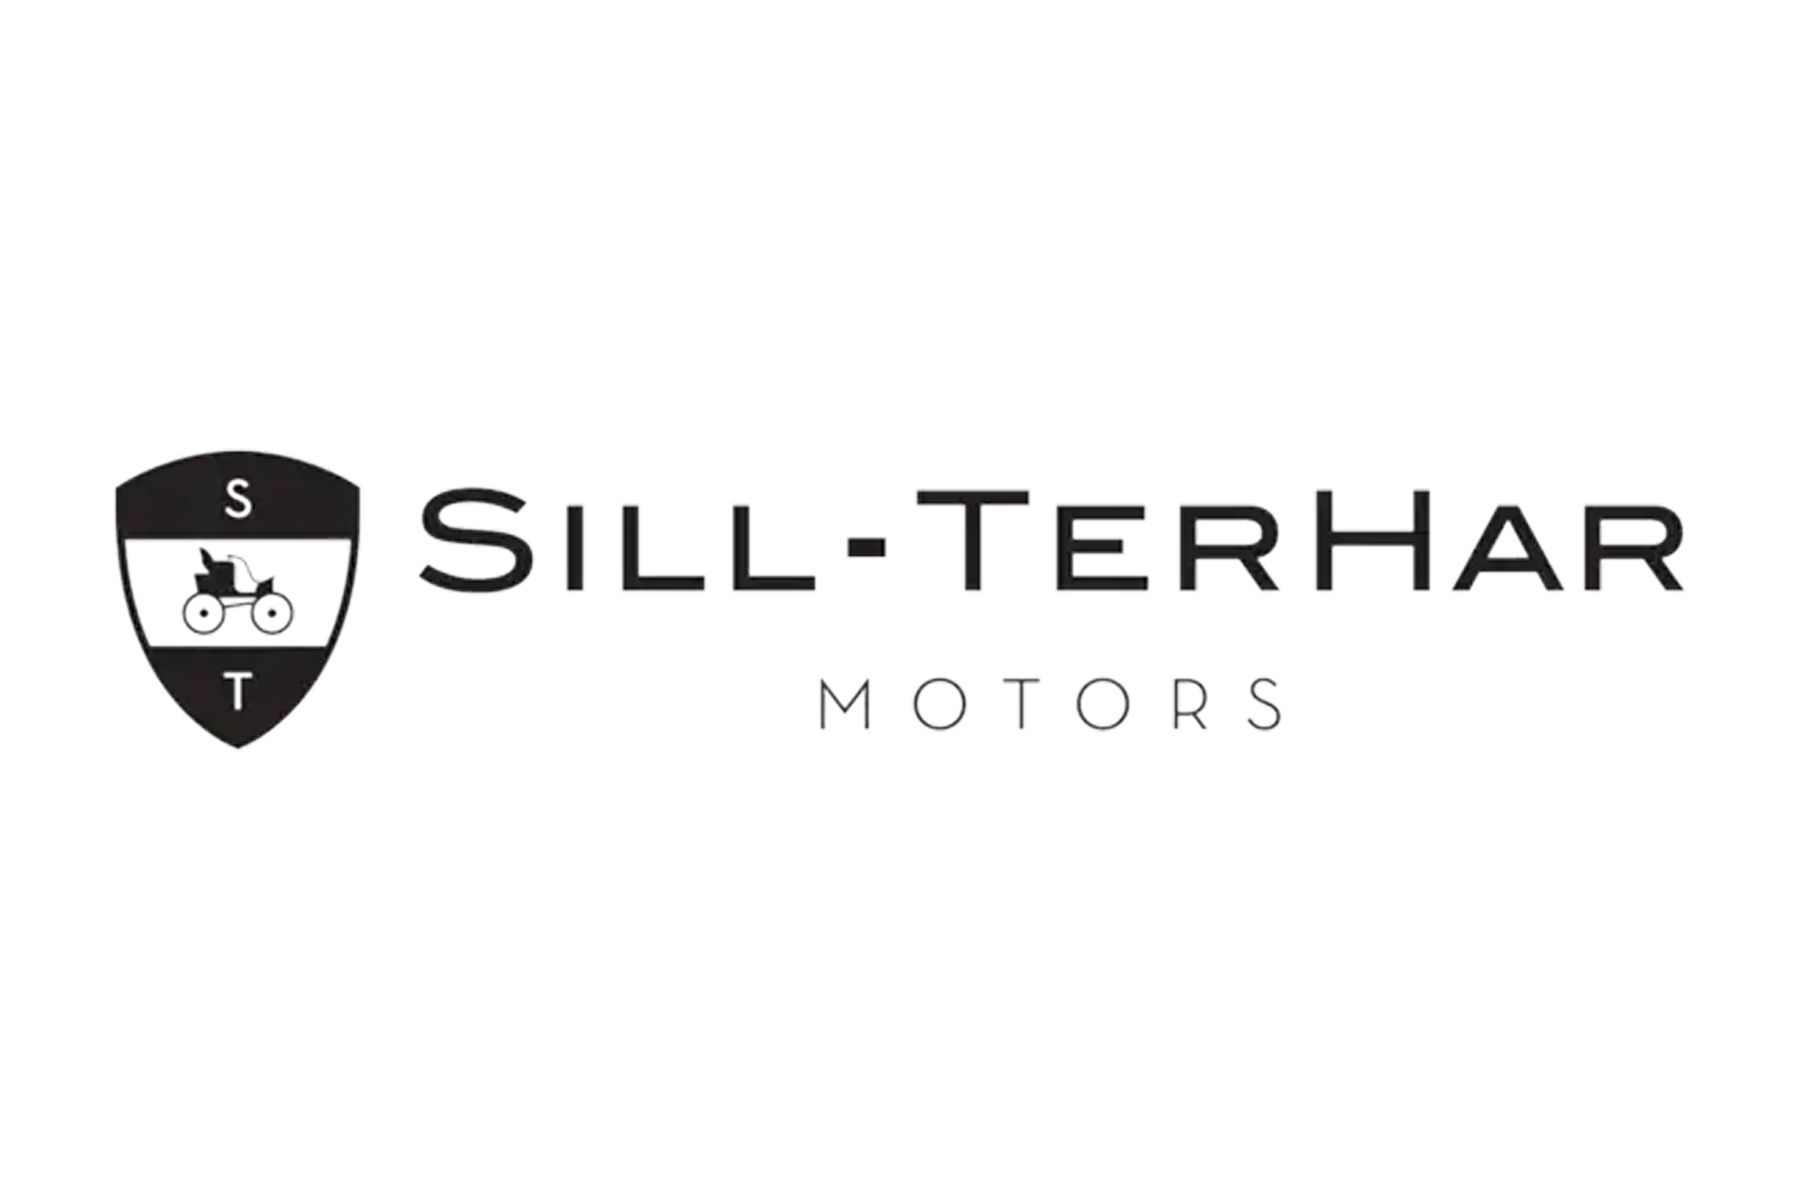 Sill-TerHar Motors